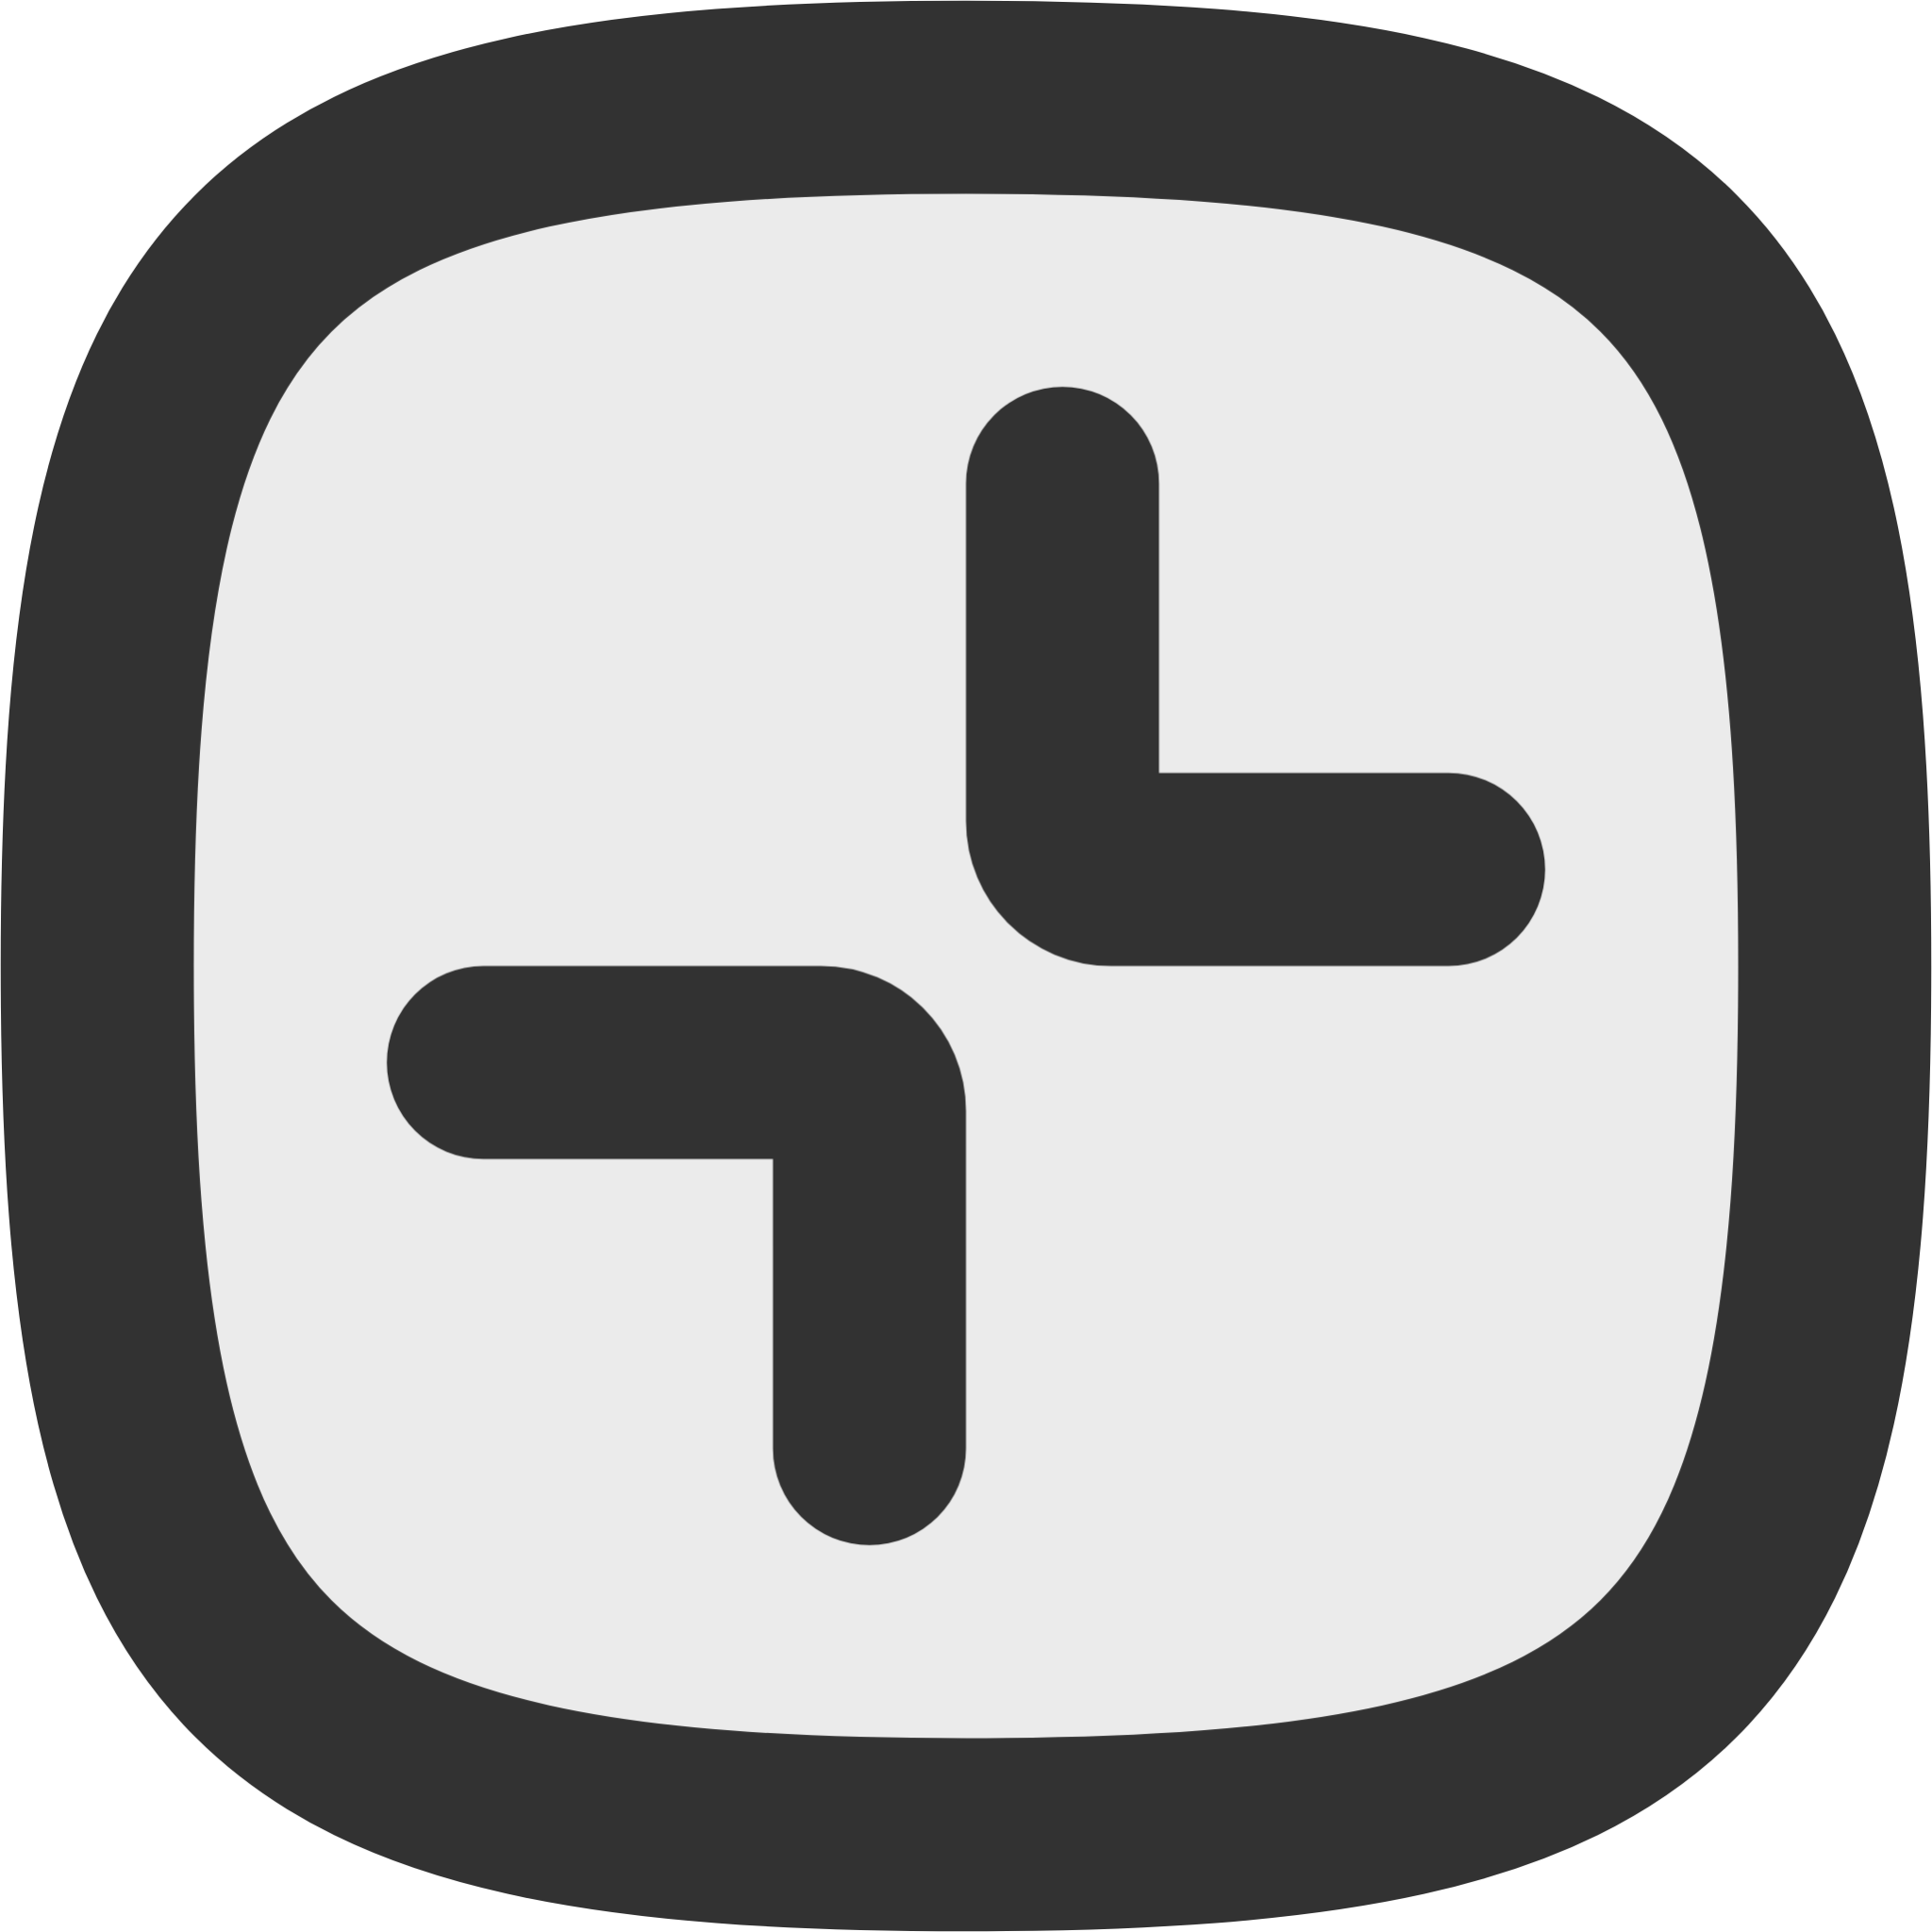 minimaize square icon